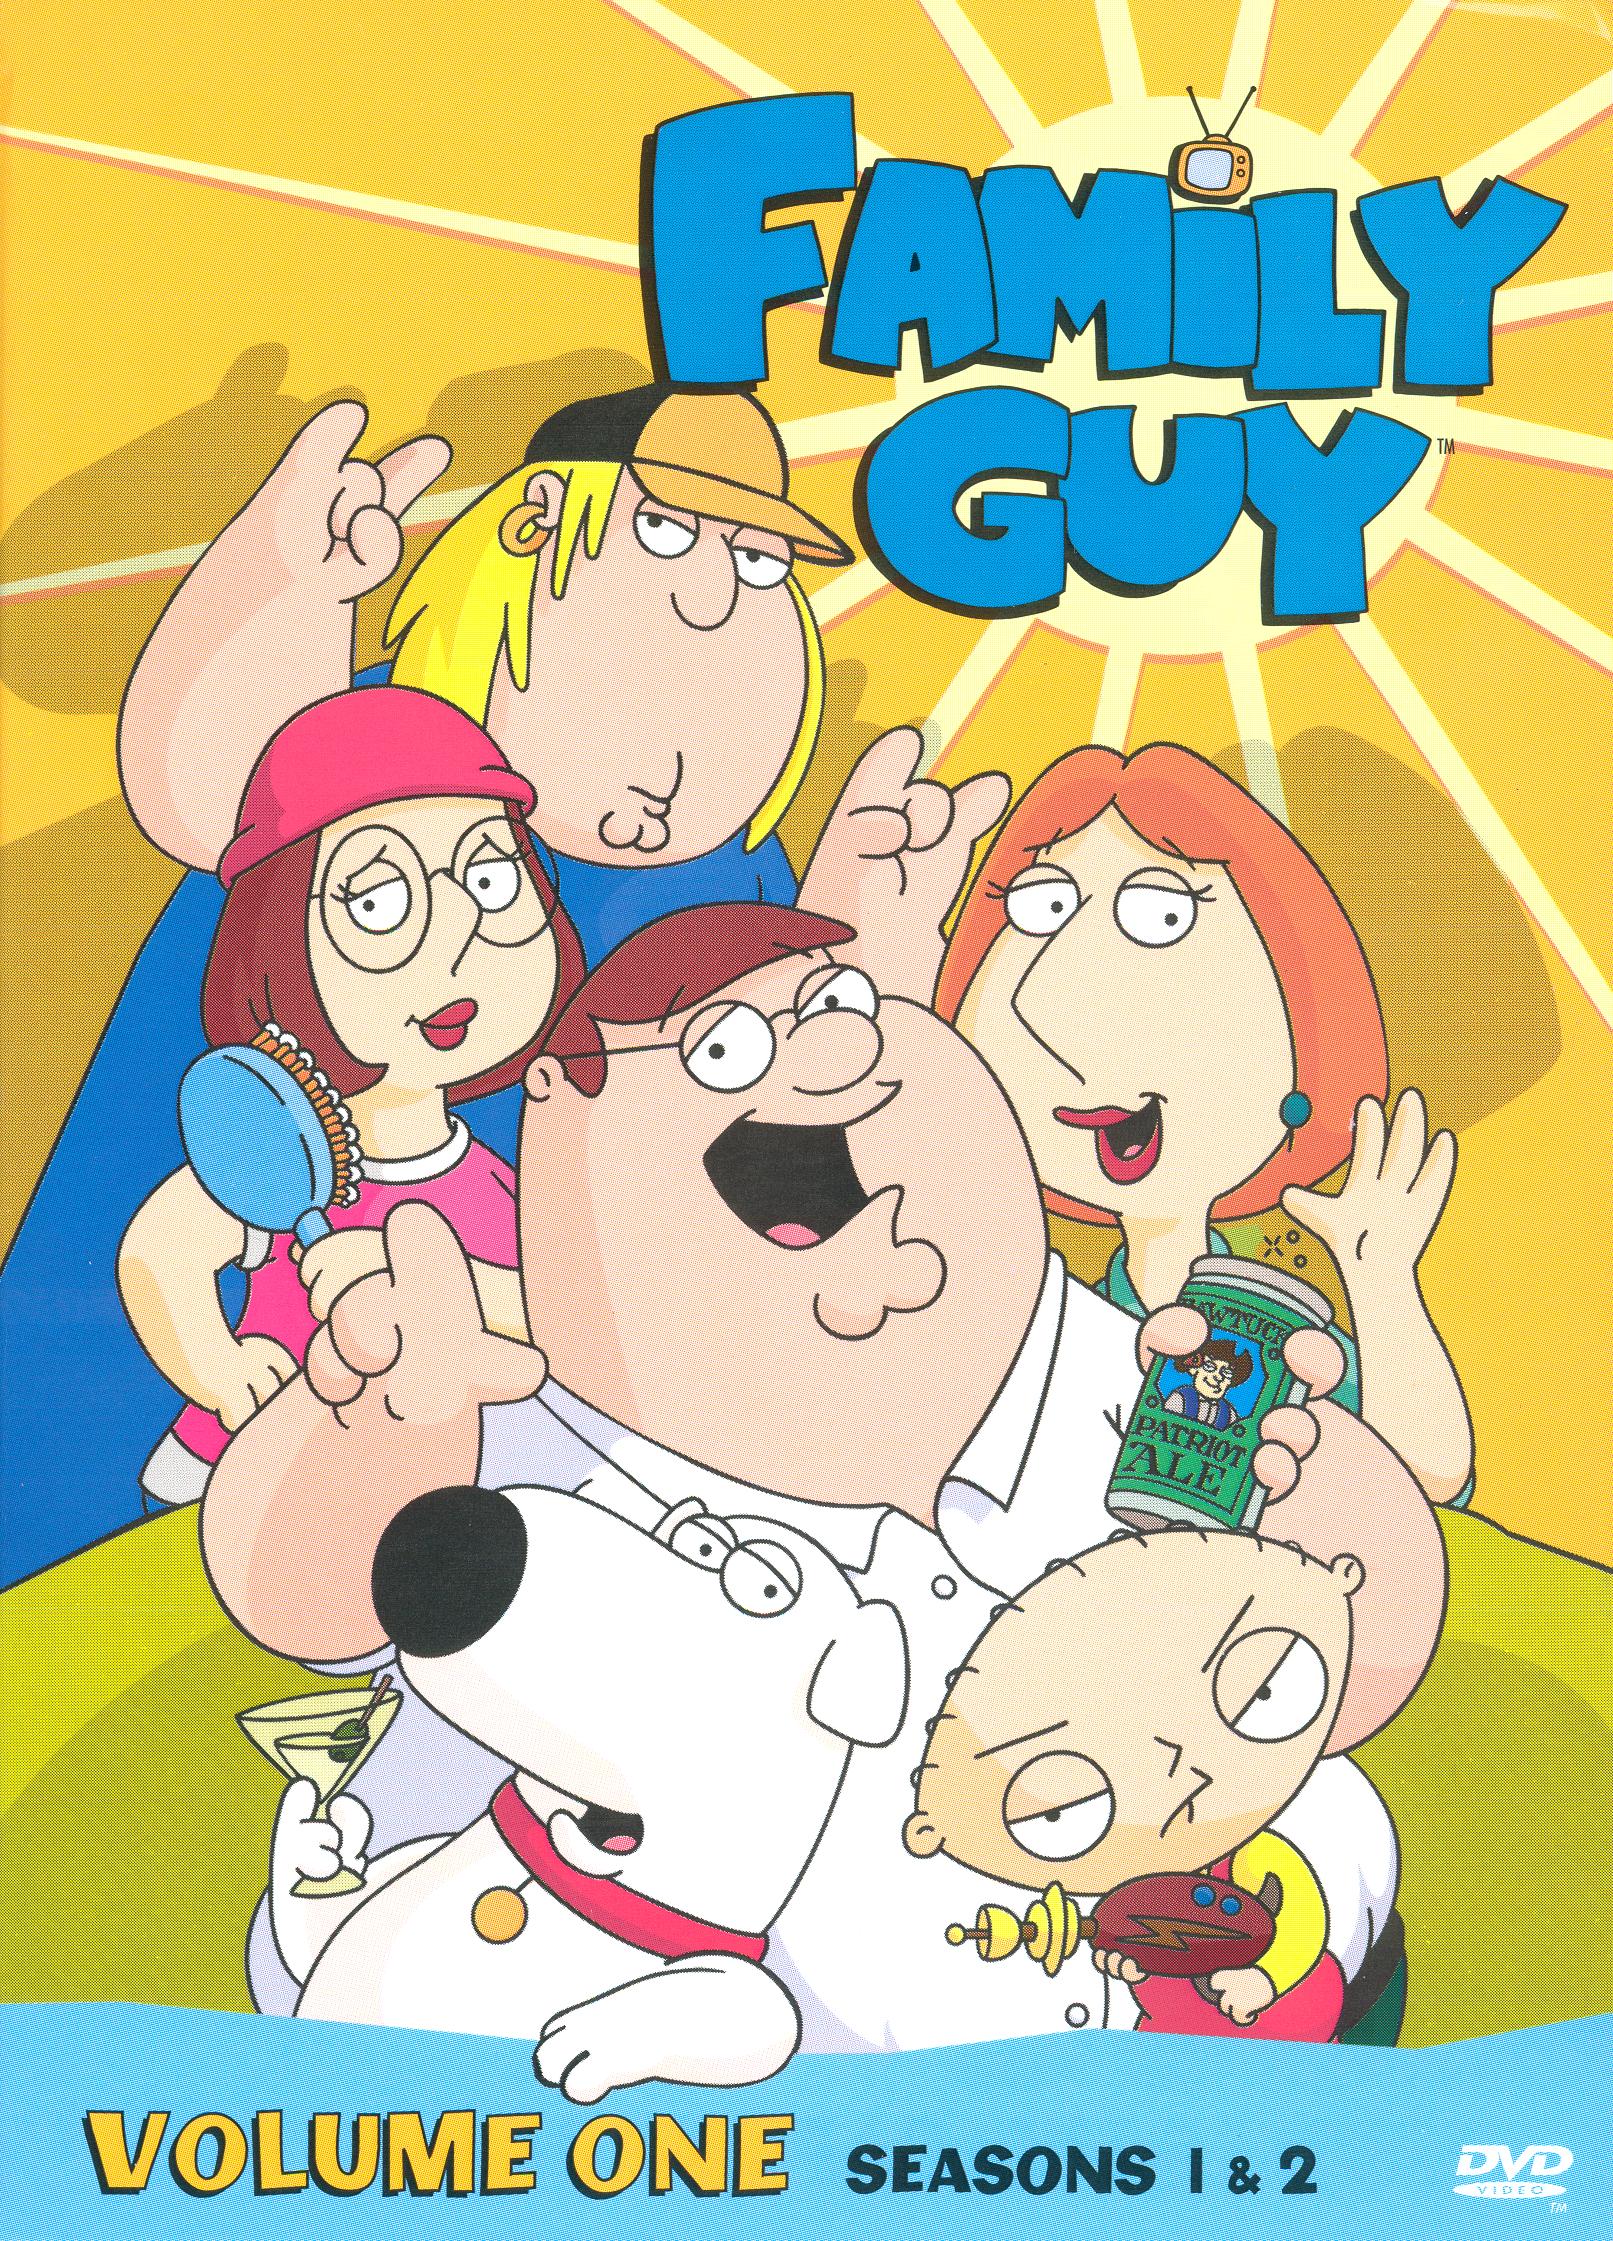 Línea del sitio dramático Hundimiento Family Guy, Vol. 1: Seasons 1 & 2 [4 Discs] [DVD] - Best Buy